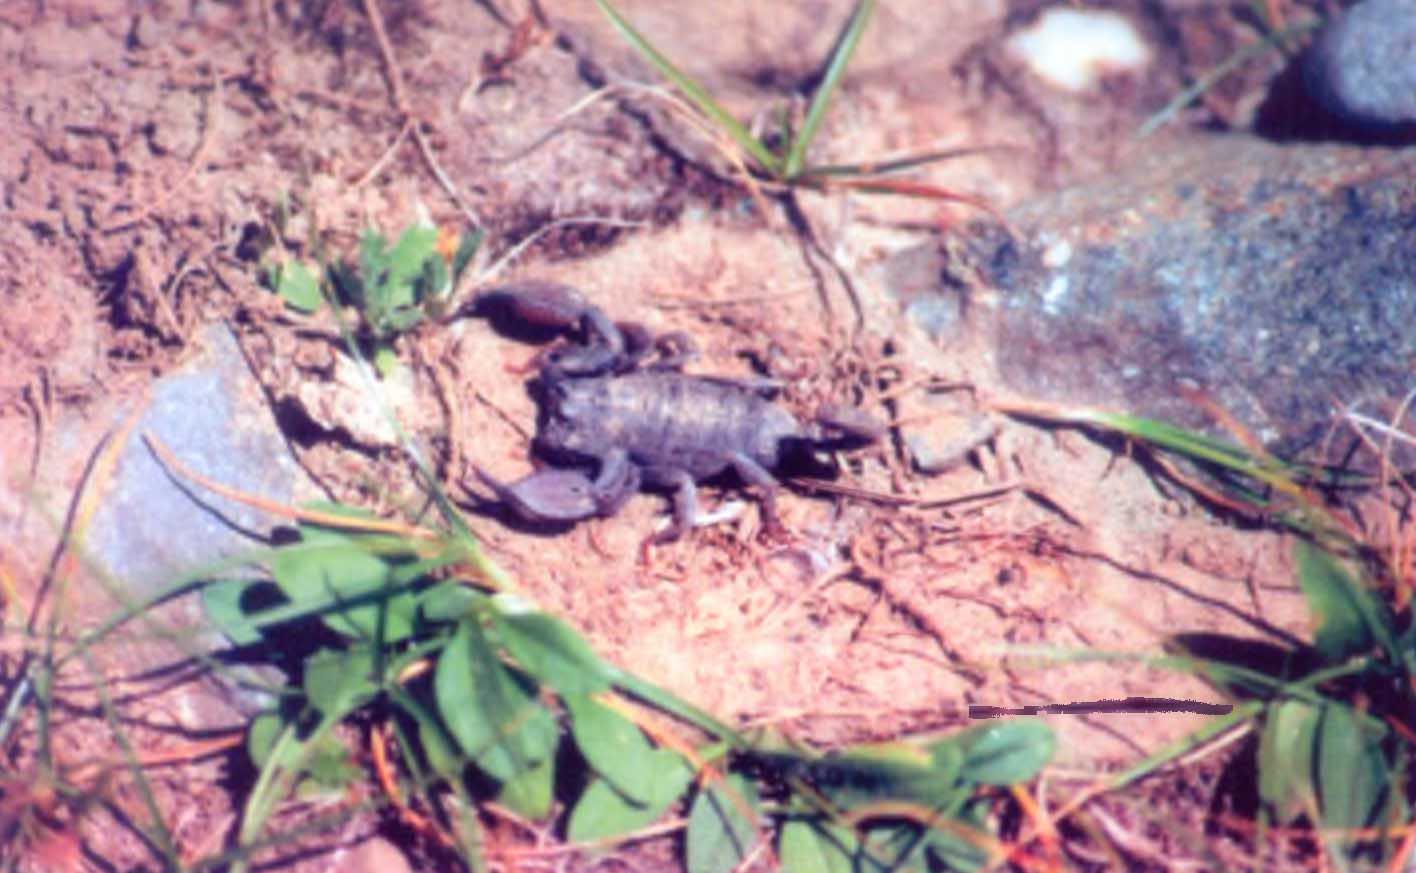 Скорпиона под камнем на берегу озера Ямджо-Юмцо я обнаружил на высоте около 4800 м над уровнем моря.